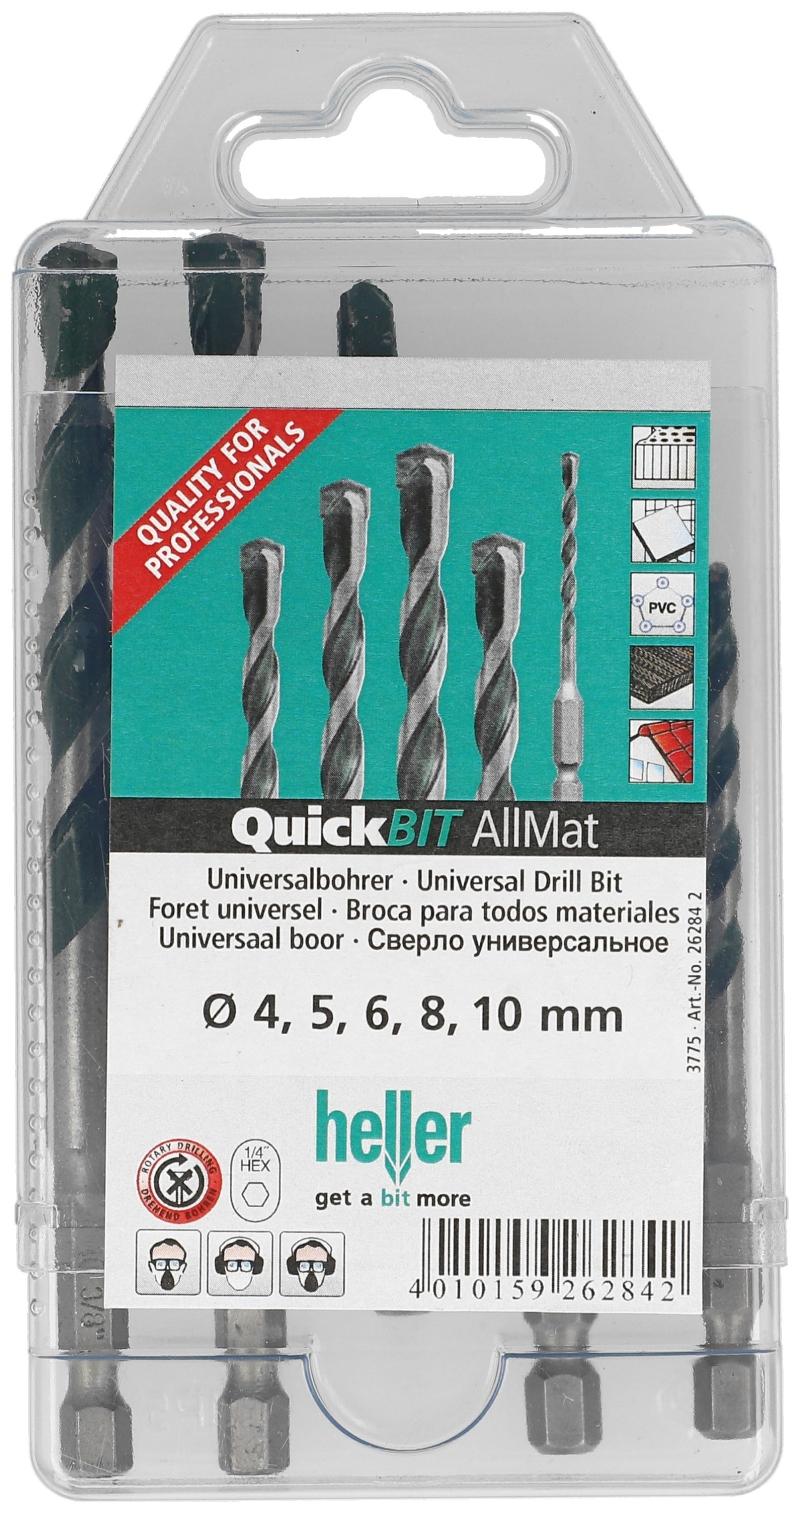 Heller universalborsett 4,5,6,8,10 mm